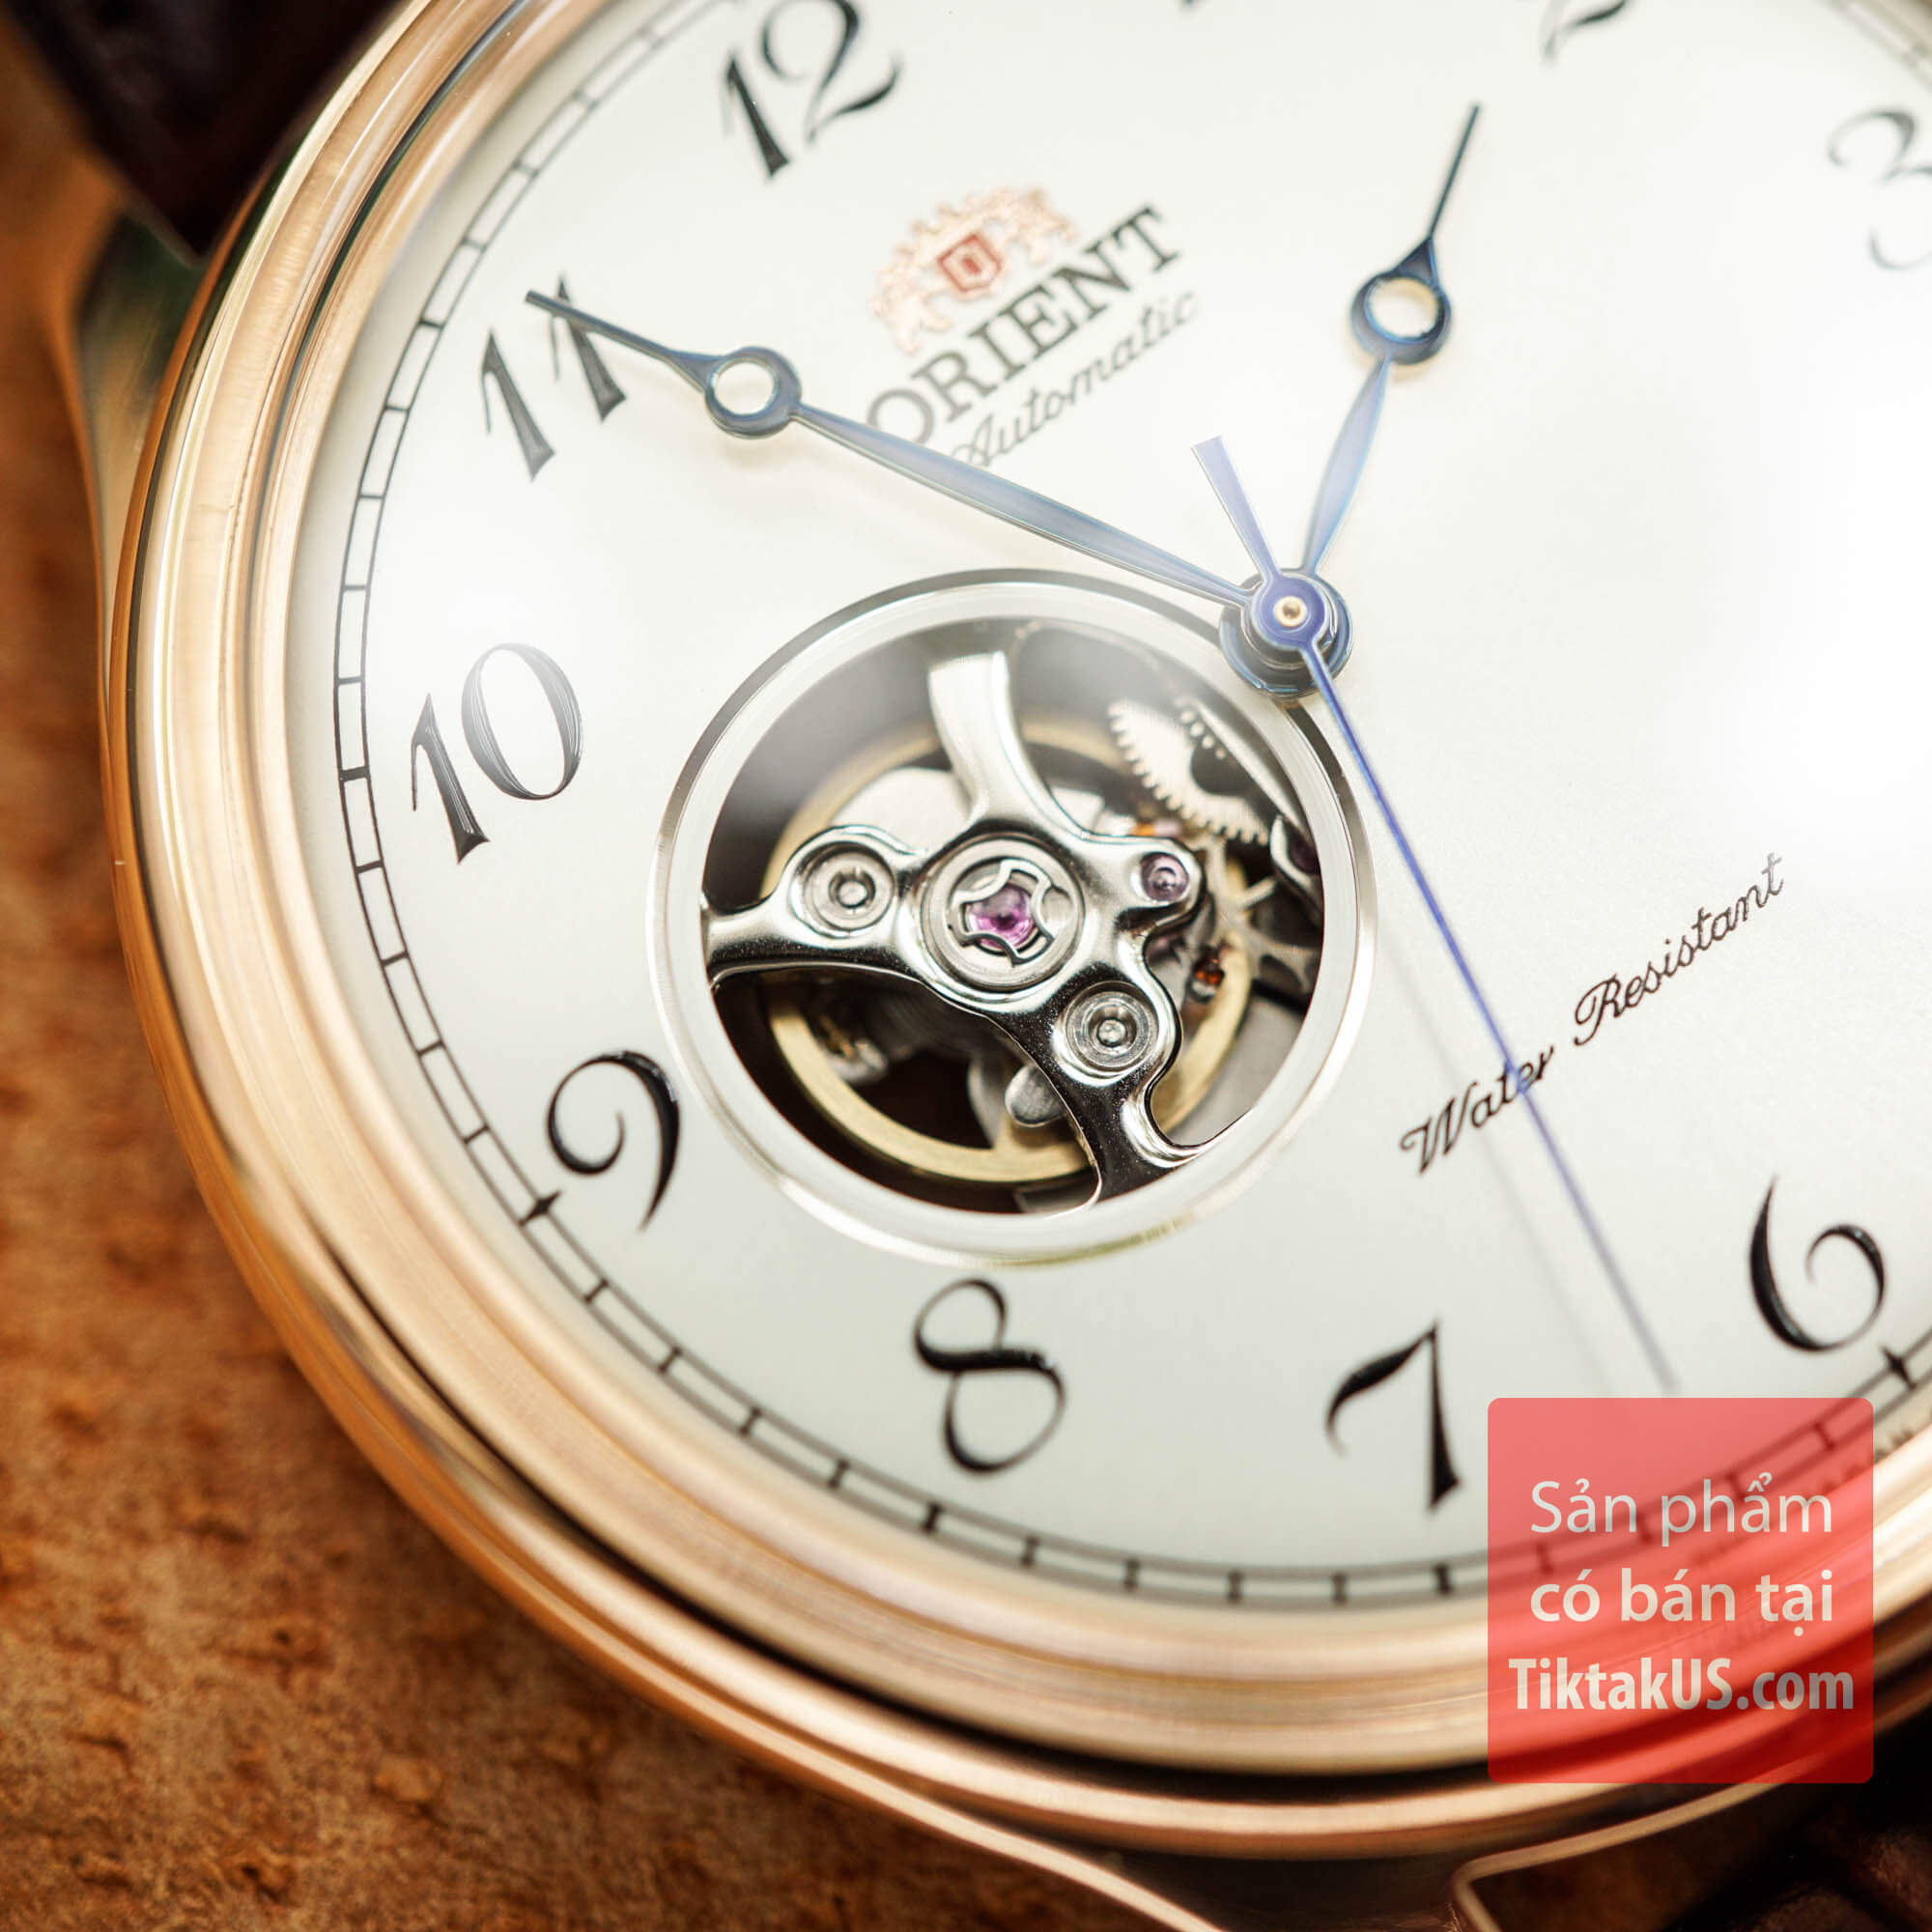 [HCM]Đồng hồ nam dây da classic Orient Caballero gen.2 RA-AG0012S10B ( Rose Gold) kính cong mạ vàng hồng kim xanh...